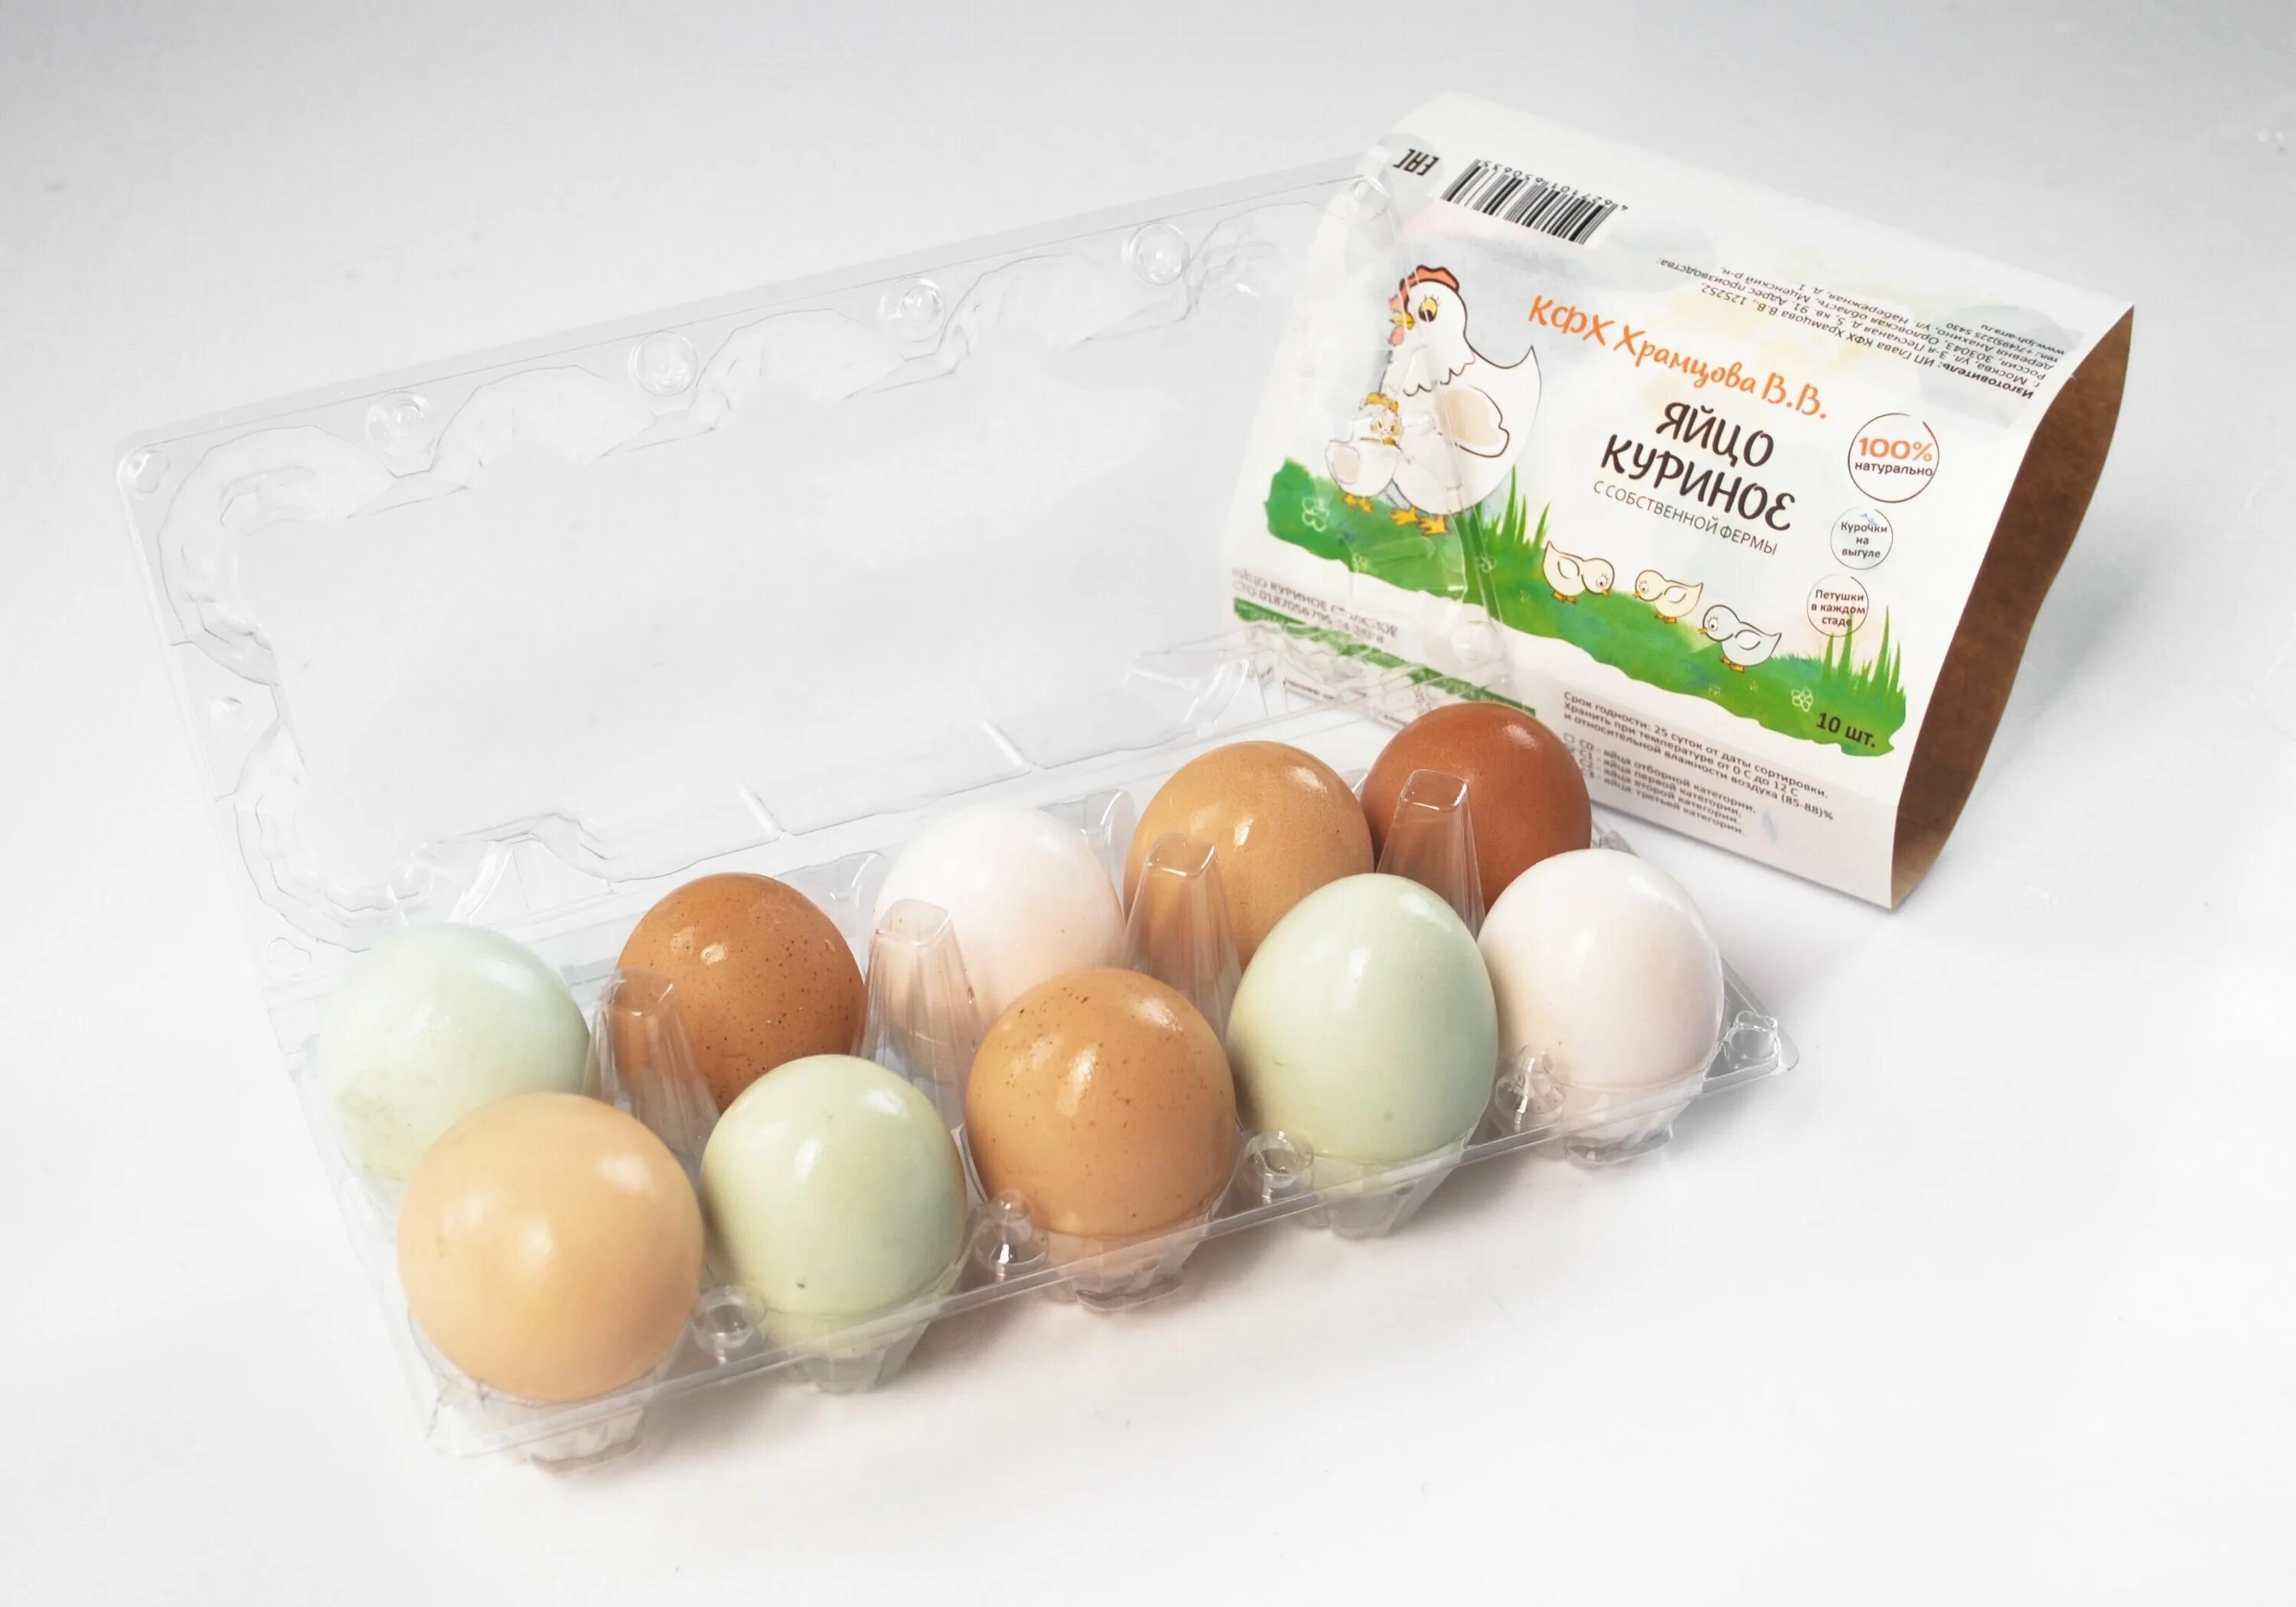 Купить яйца в брянске